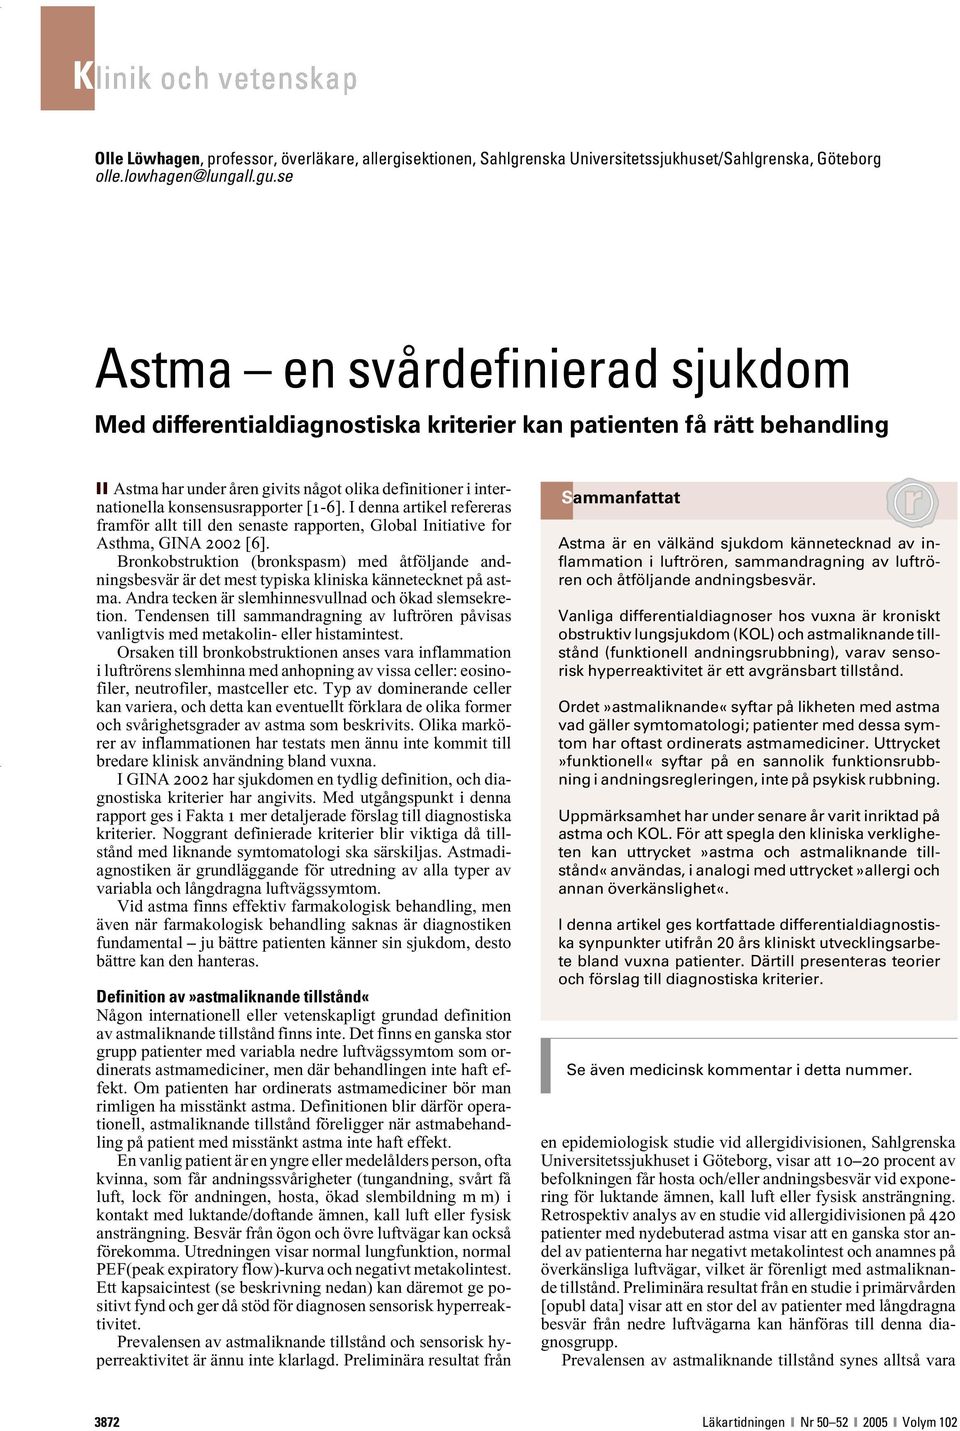 [1-6]. I denna artikel refereras framför allt till den senaste rapporten, Global Initiative for Asthma, GINA 2002 [6].